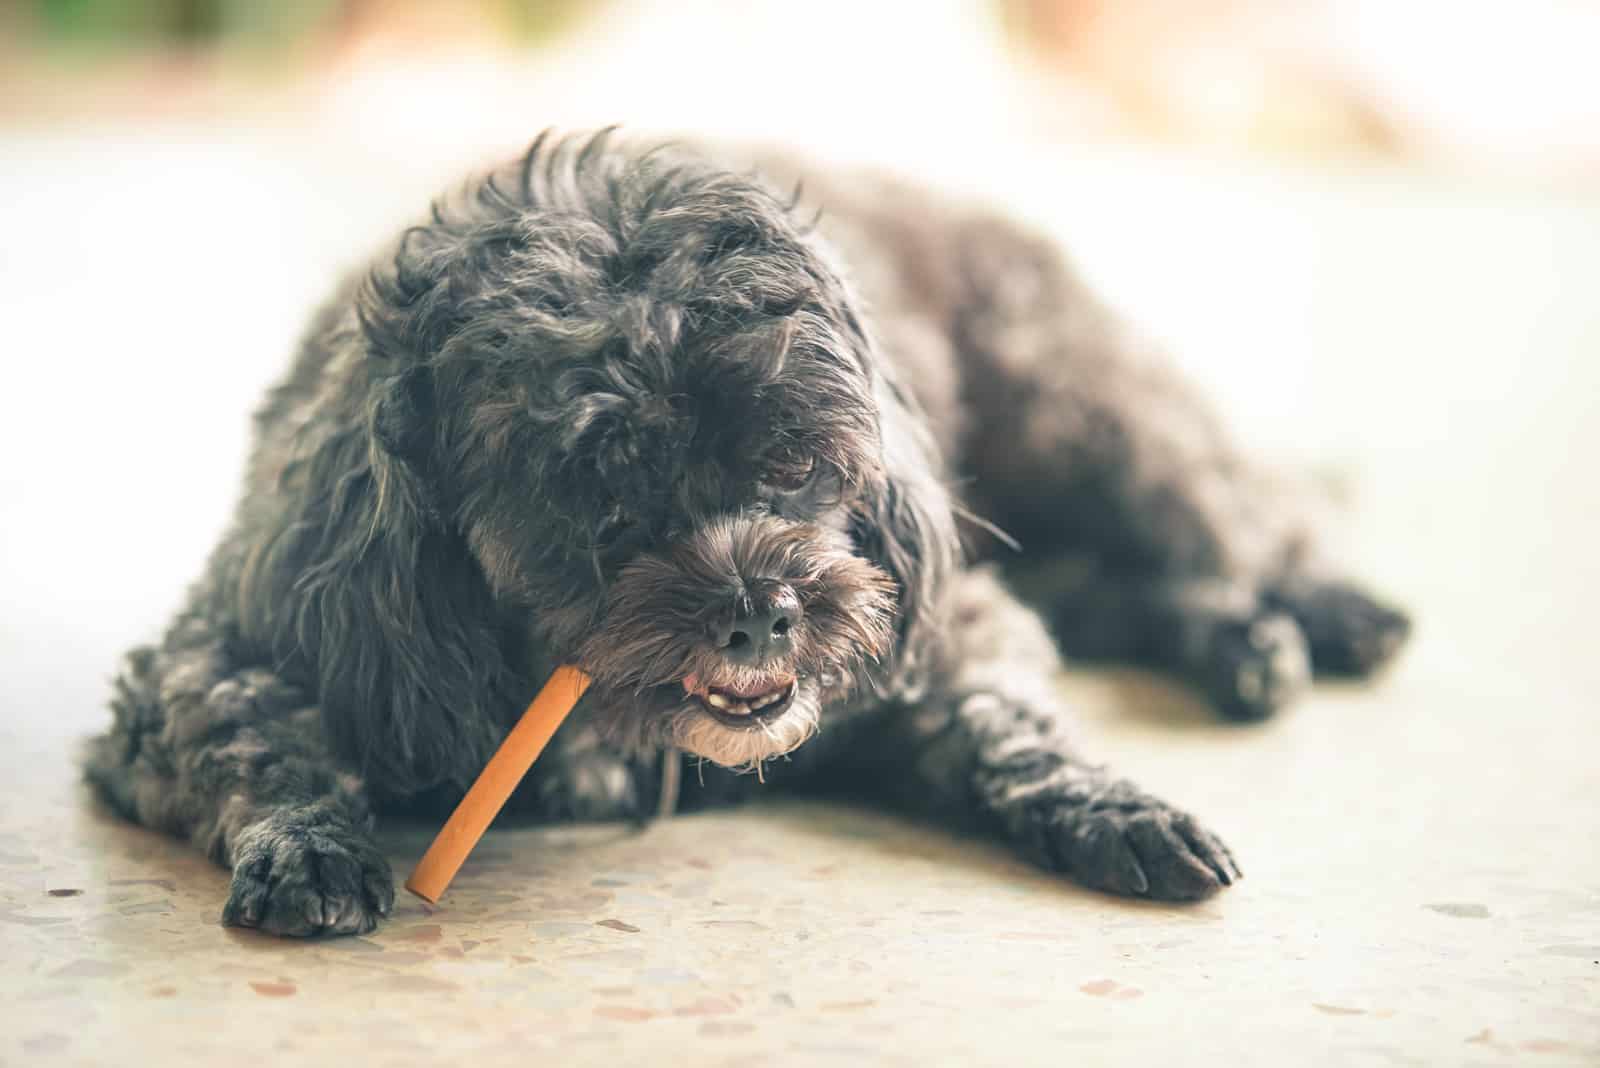 a black poodle eats dog food